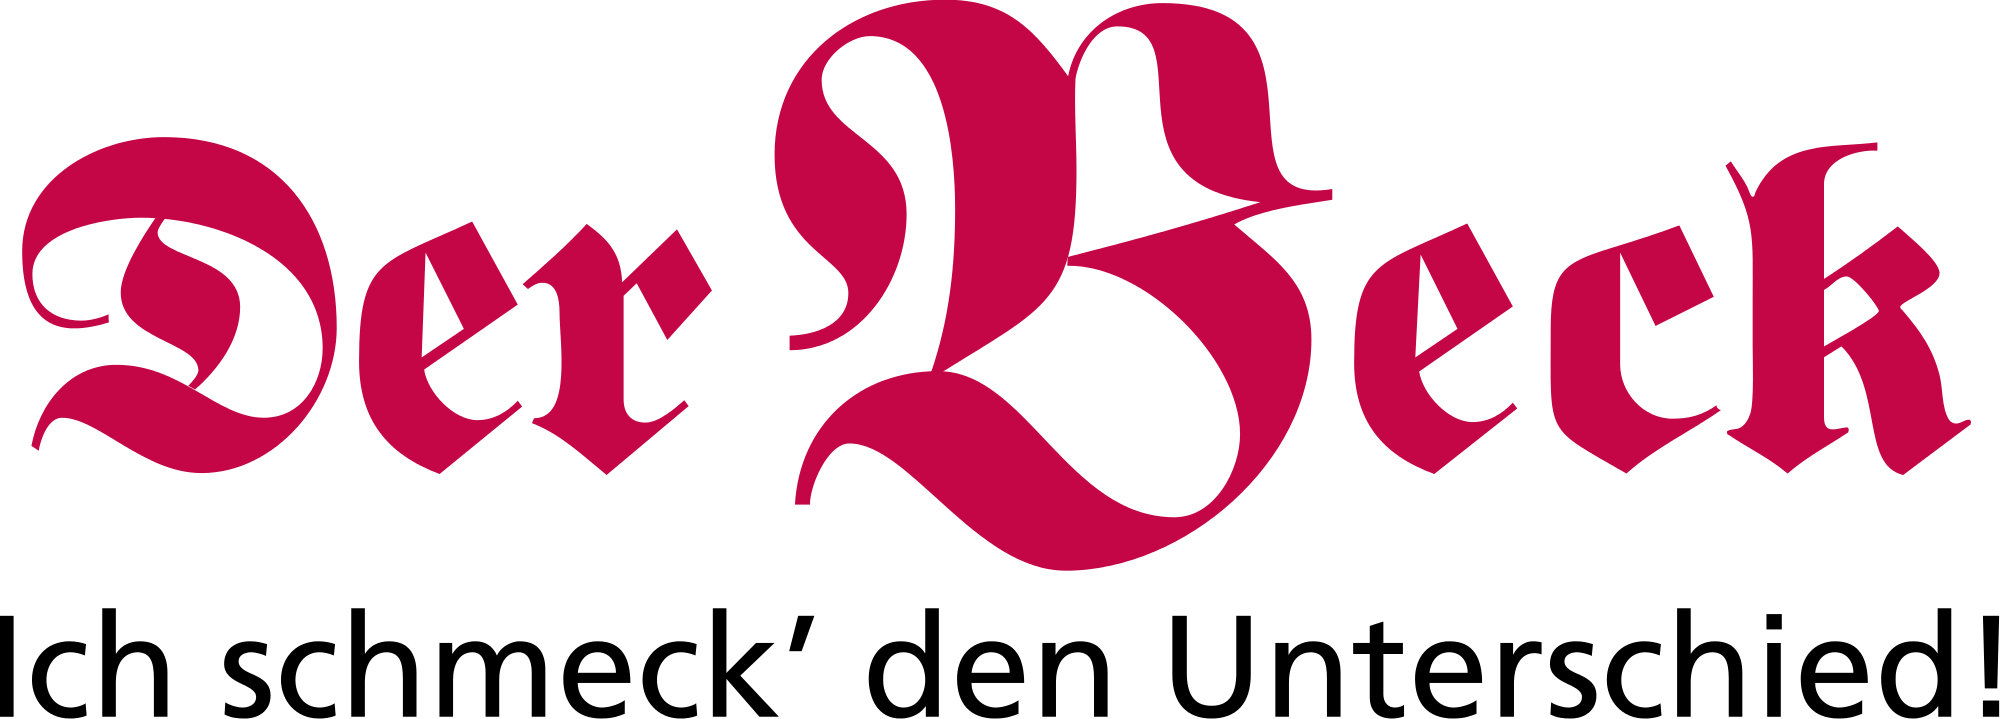 Beck Logo - File:Der Beck.svg - Wikimedia Commons